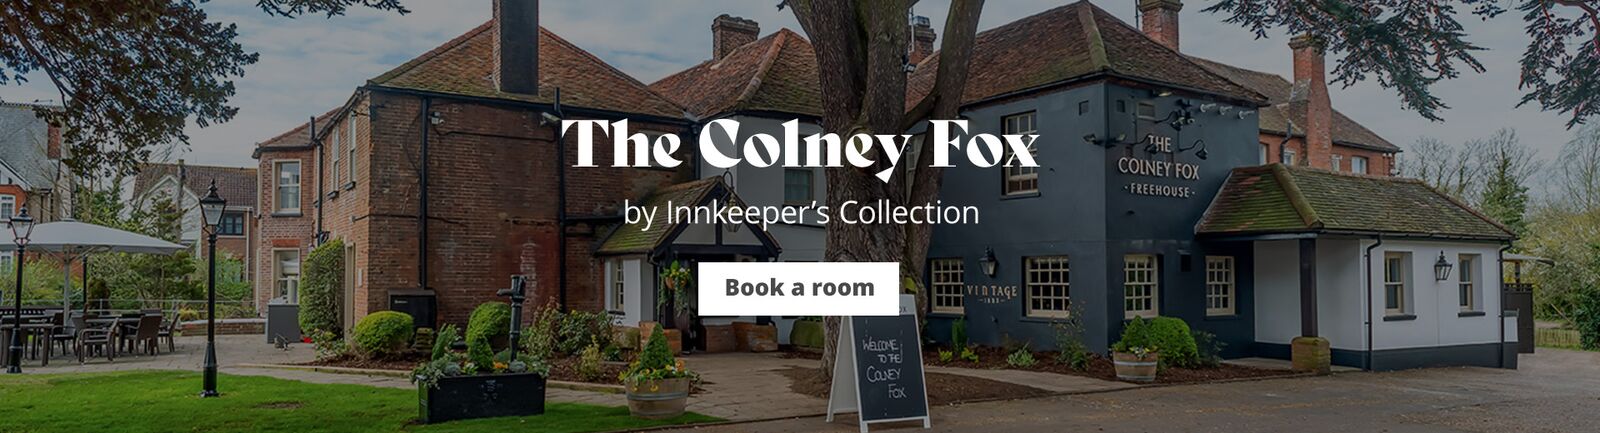 The Colney Fox